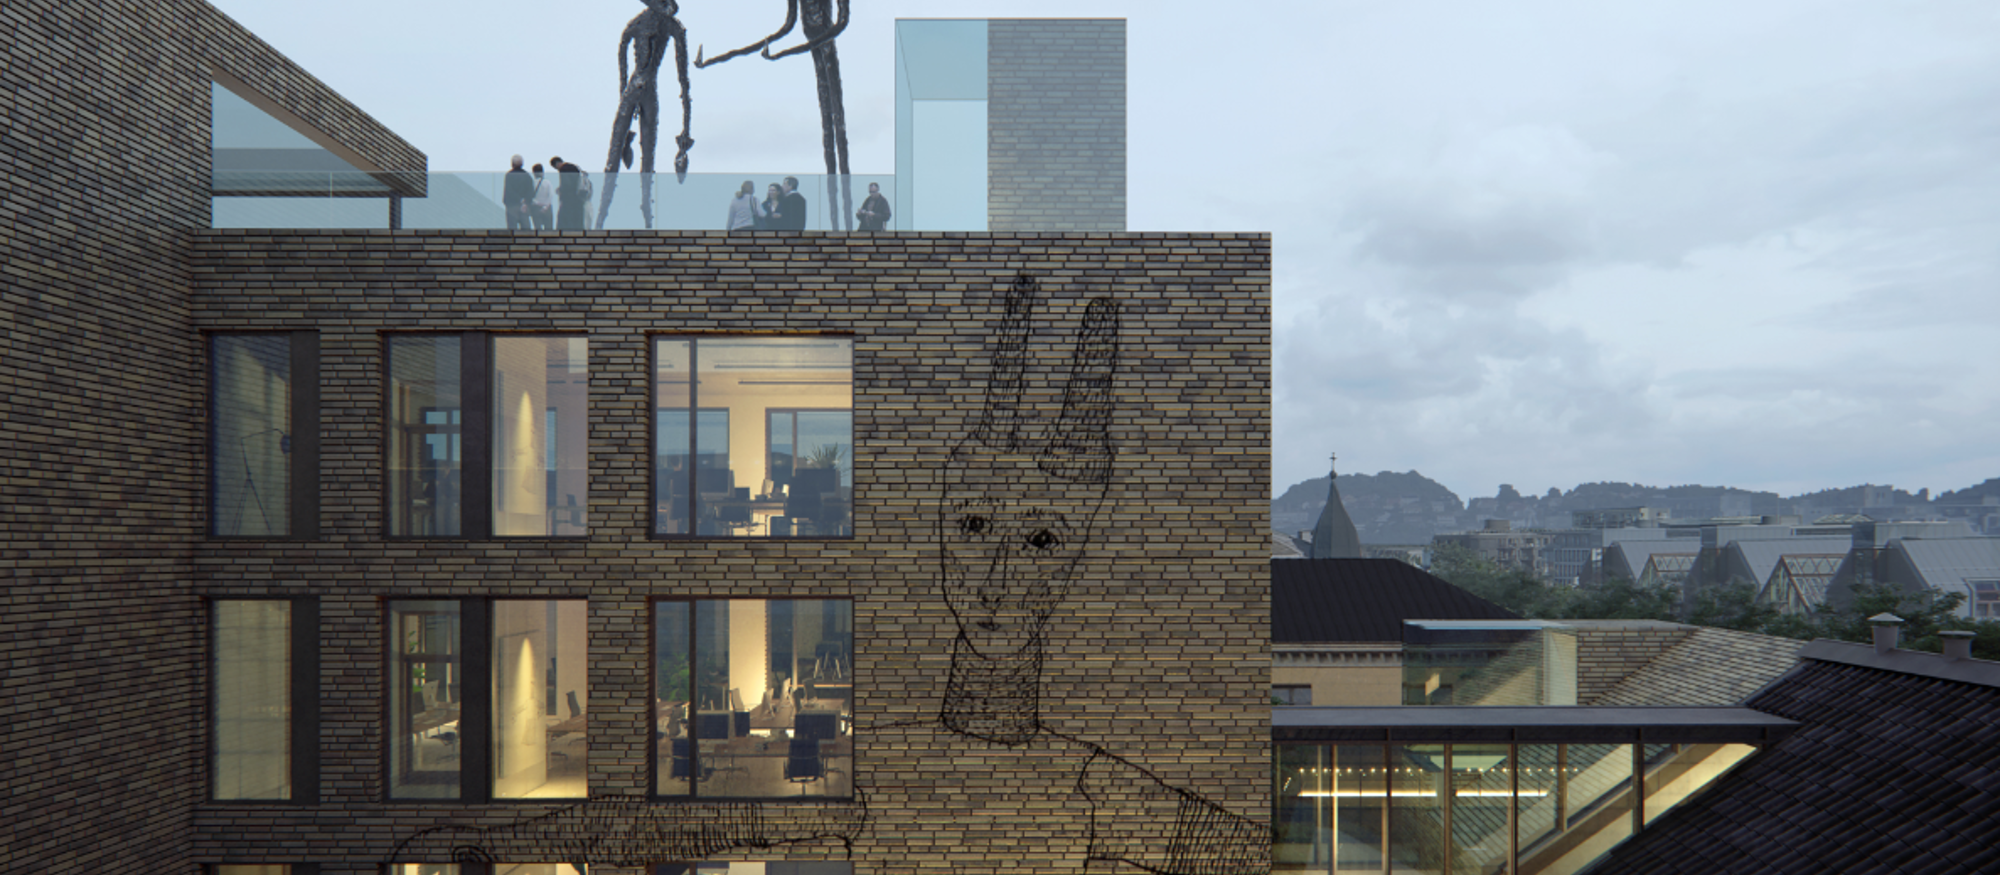 Moderne bygg med kunstneriske illustrasjoner på murveggen og kunst på taket. Illustrasjon. 